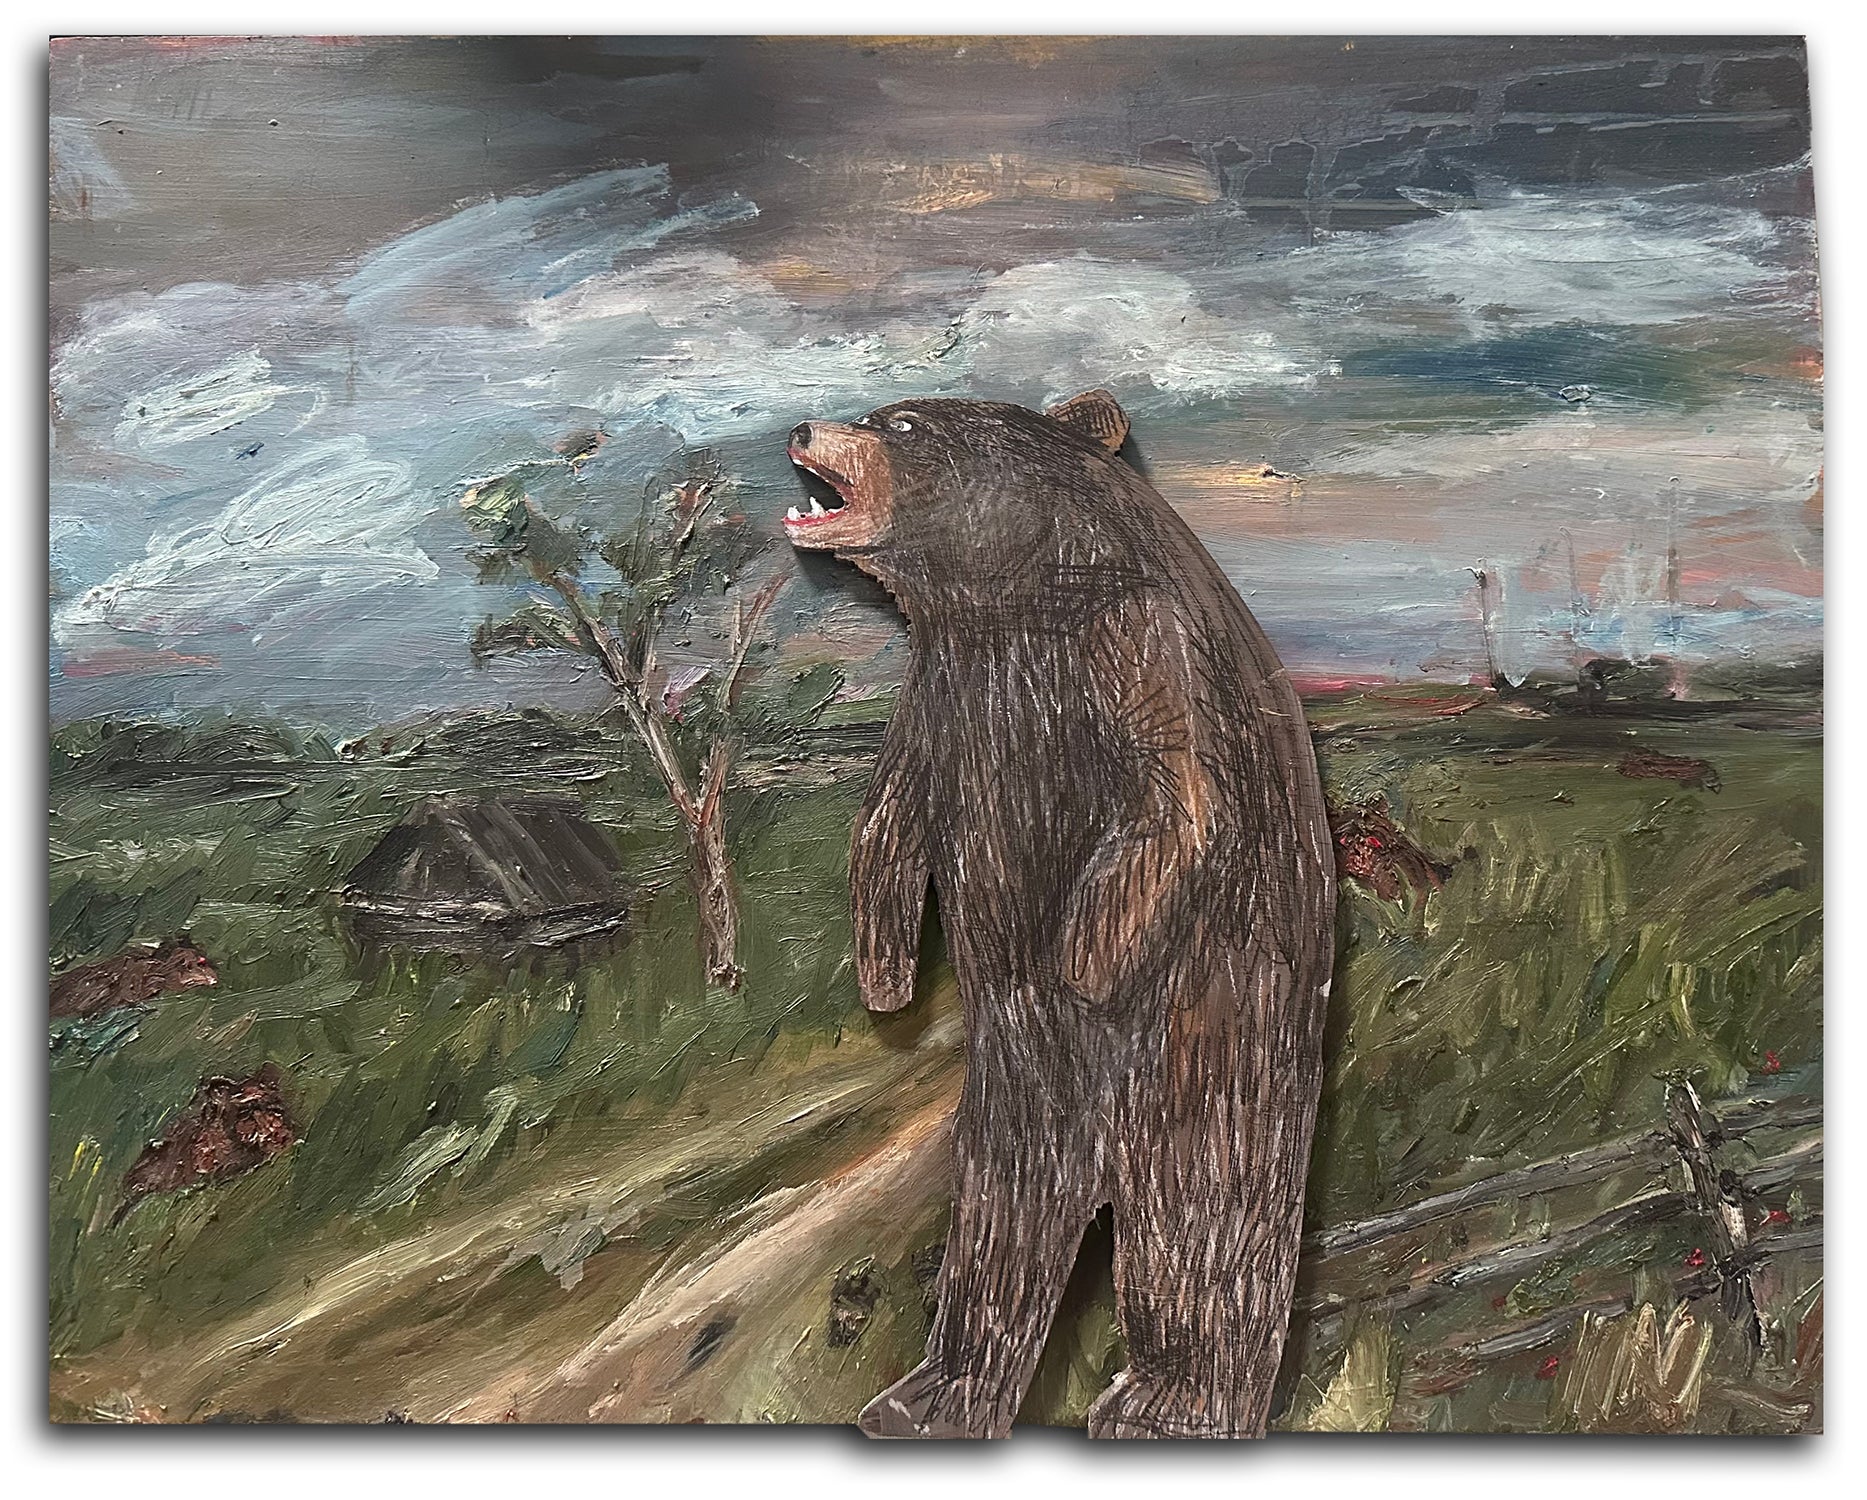 Dasha Bazanova, "Bear Outside the Village"